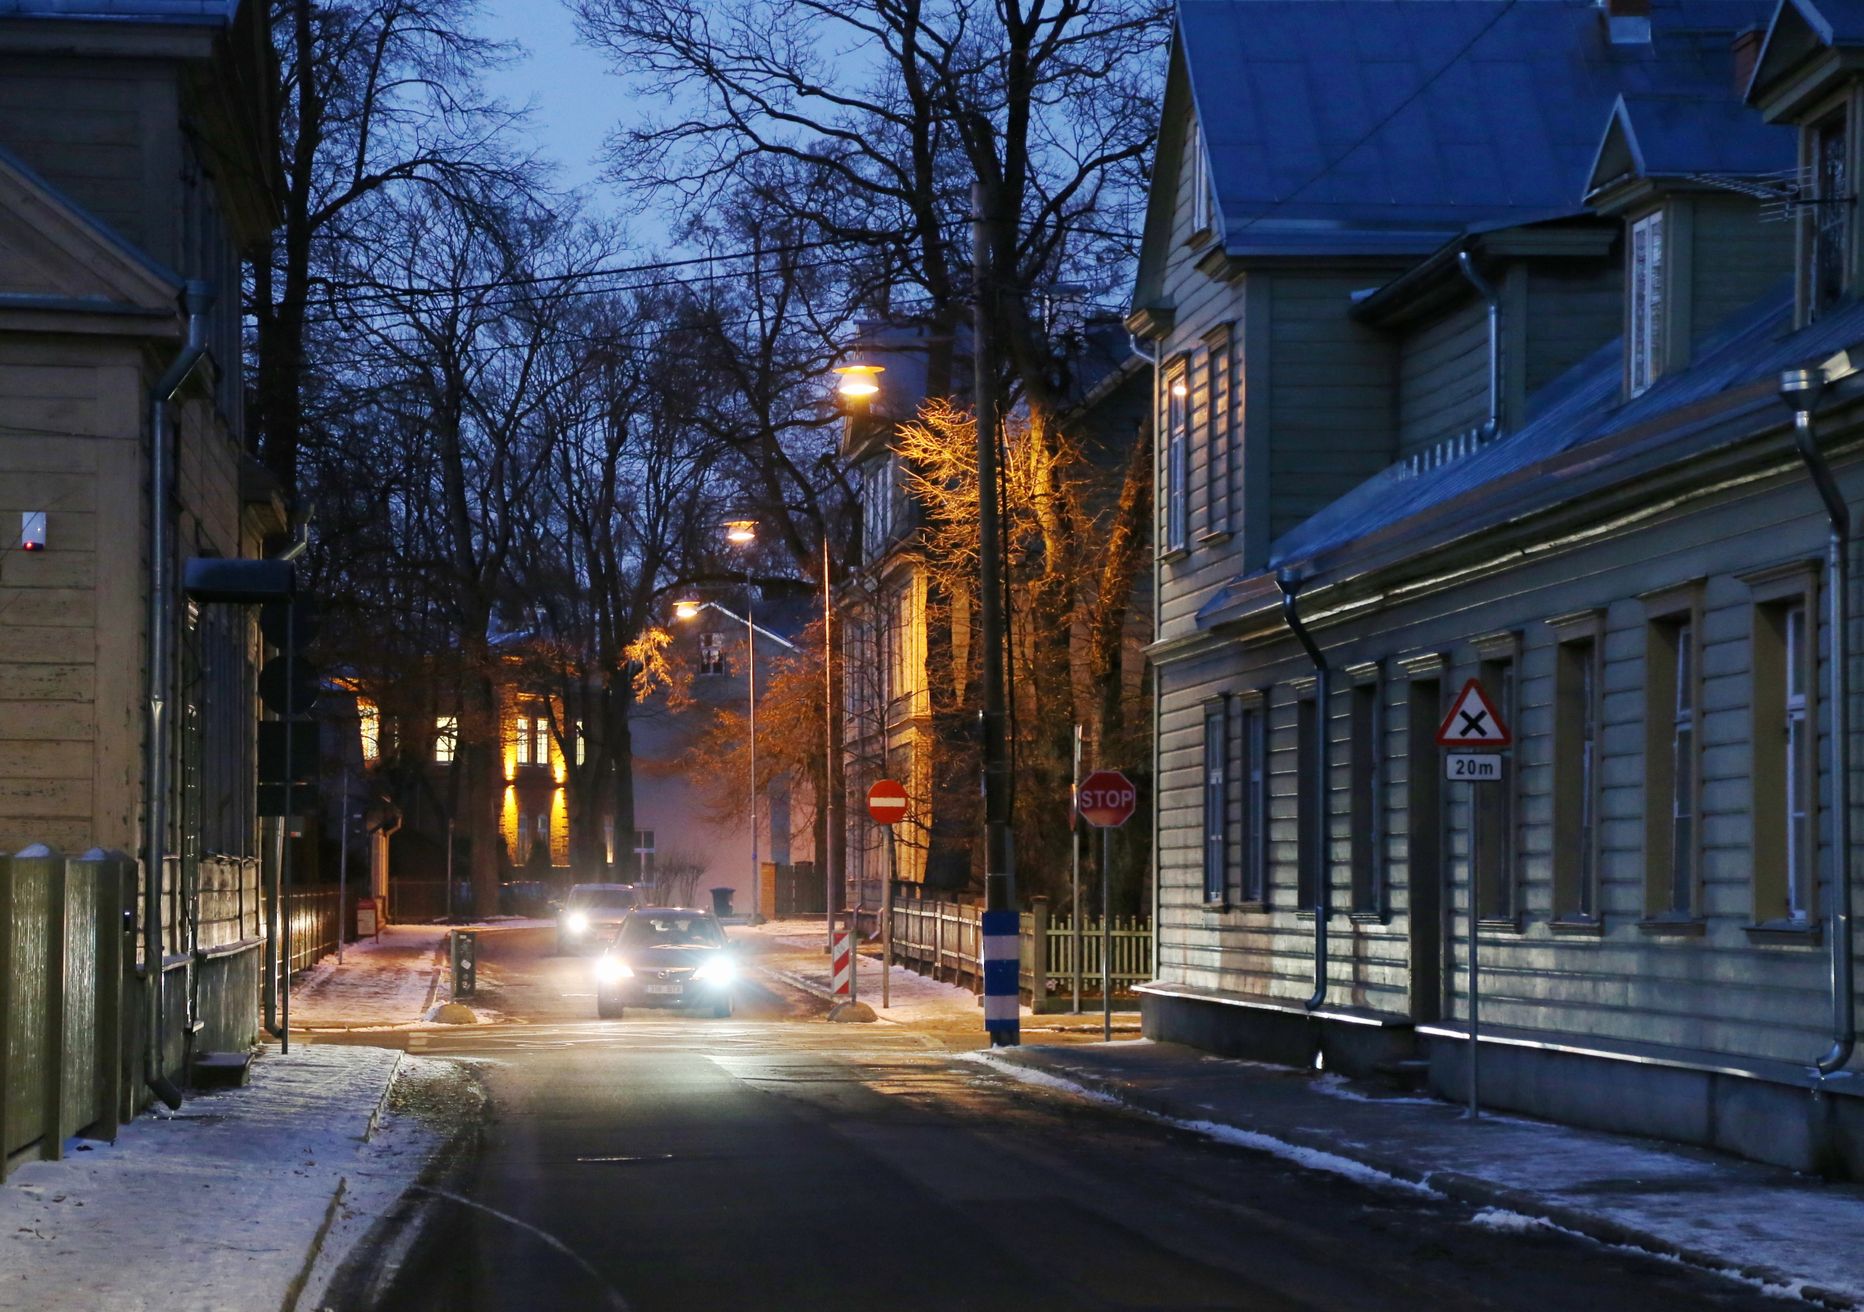 Esmaspäeva õhtupoolikul olid Veski tänaval  uued energiasäästlikud valgustid lõpuks põlema hakanud.